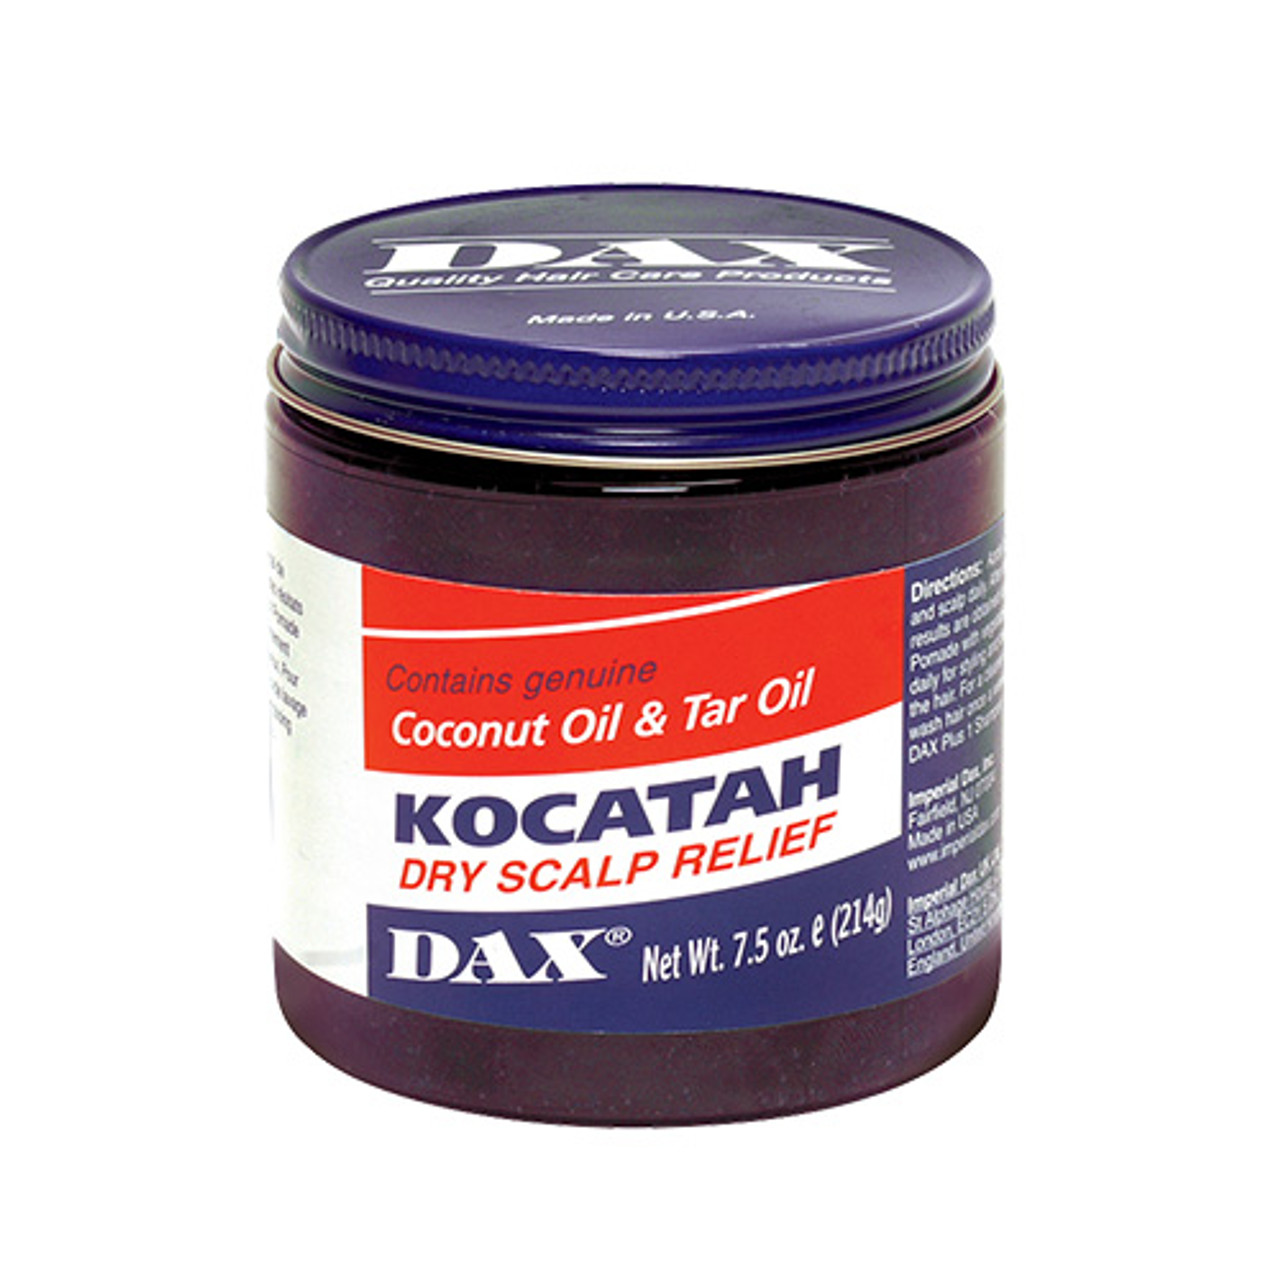 DAX Kocatah - DAX Hair Care